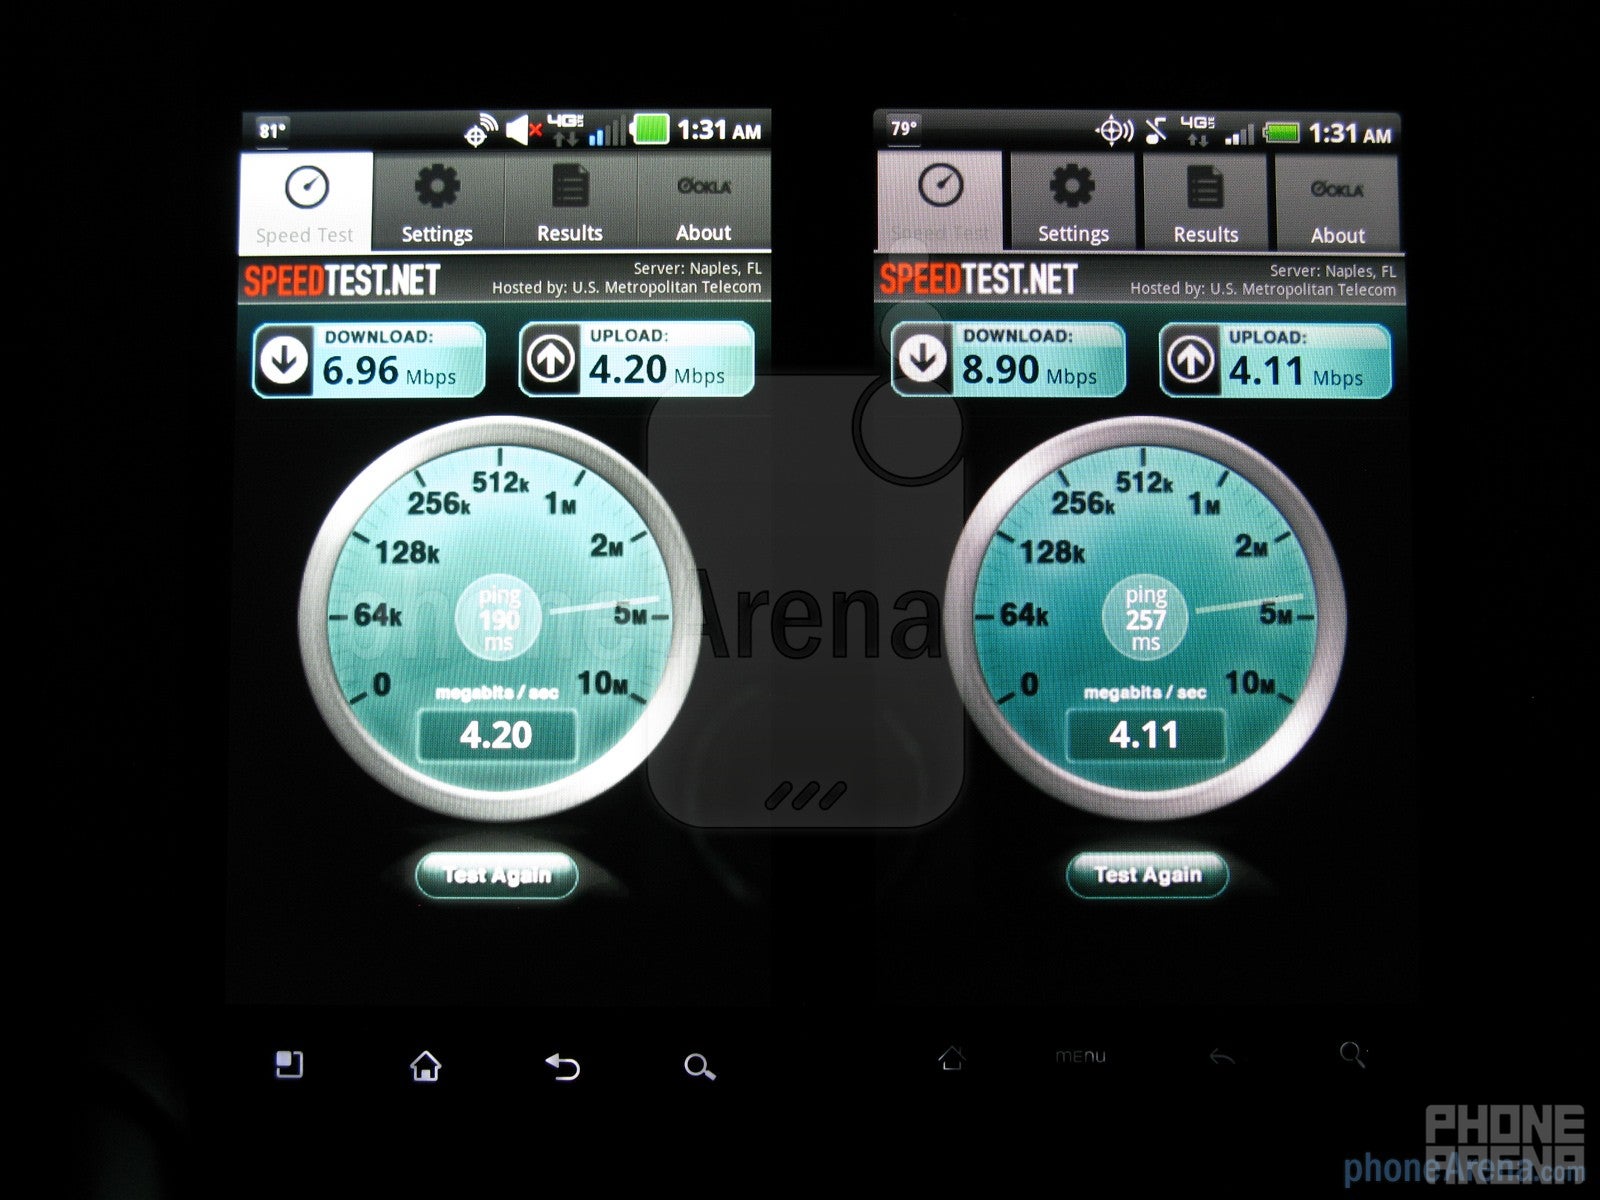 The Speedtest.net app - LG Revolution vs HTC ThunderBolt